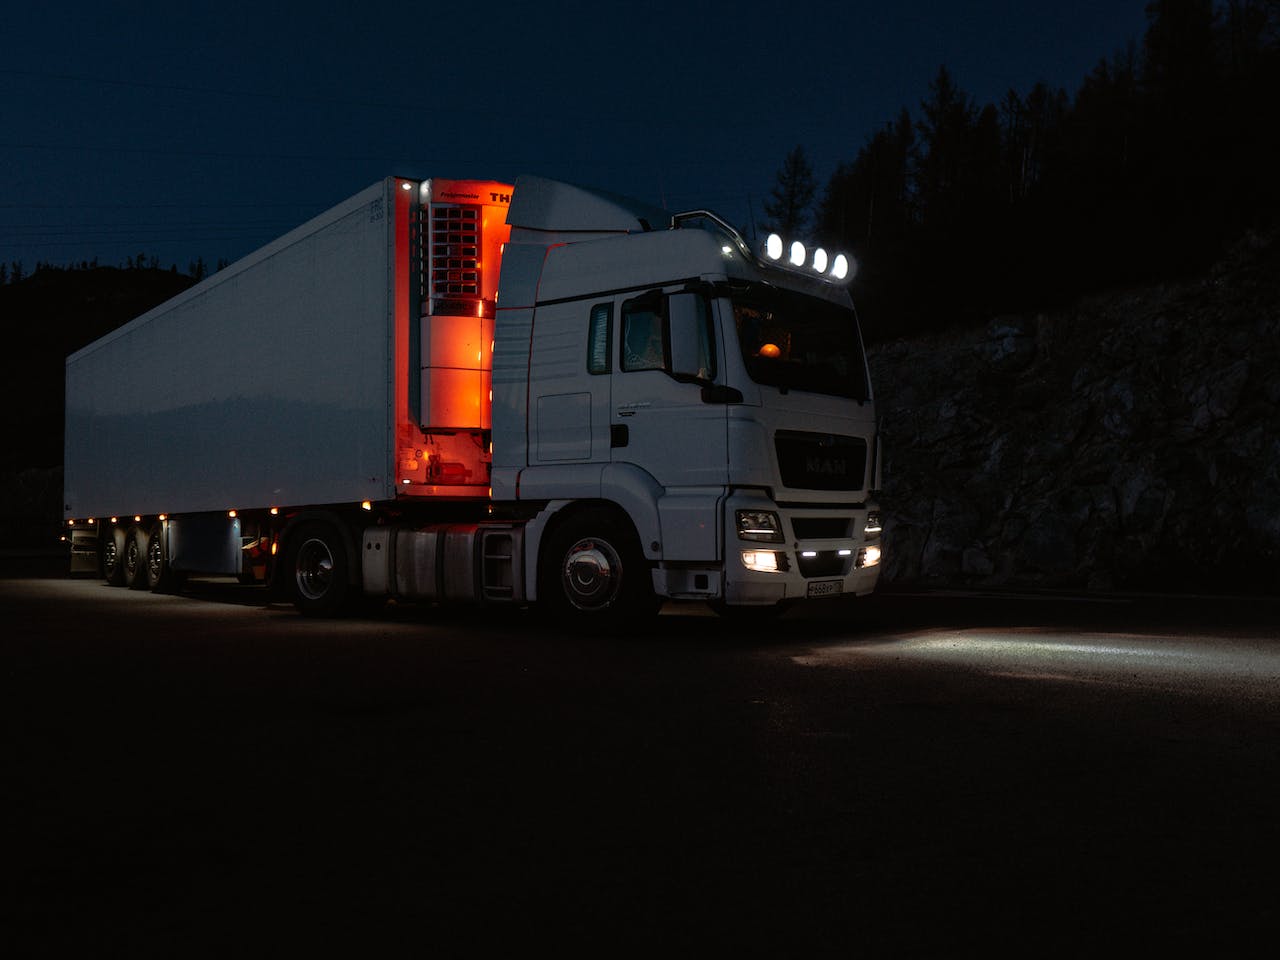 Inovatii in iluminarea camioanelor: Privire asupra ultimelor tehnologii si tendinte in lumini si accesorii pentru camioane